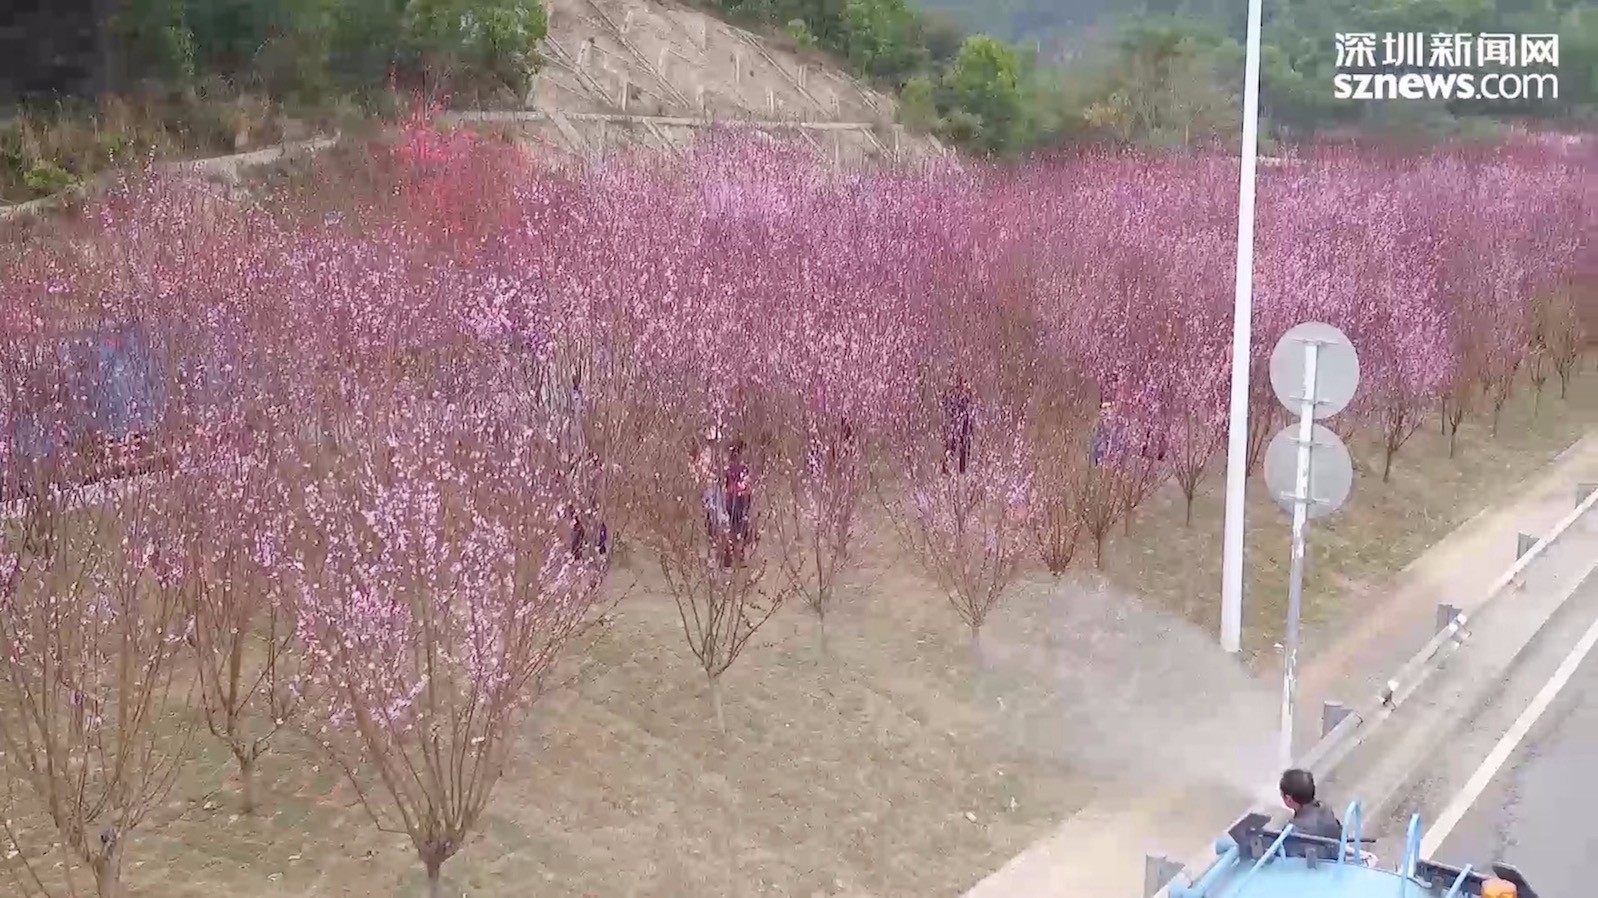 peach-blossom-grove-shenyun-sprinkler.jpg